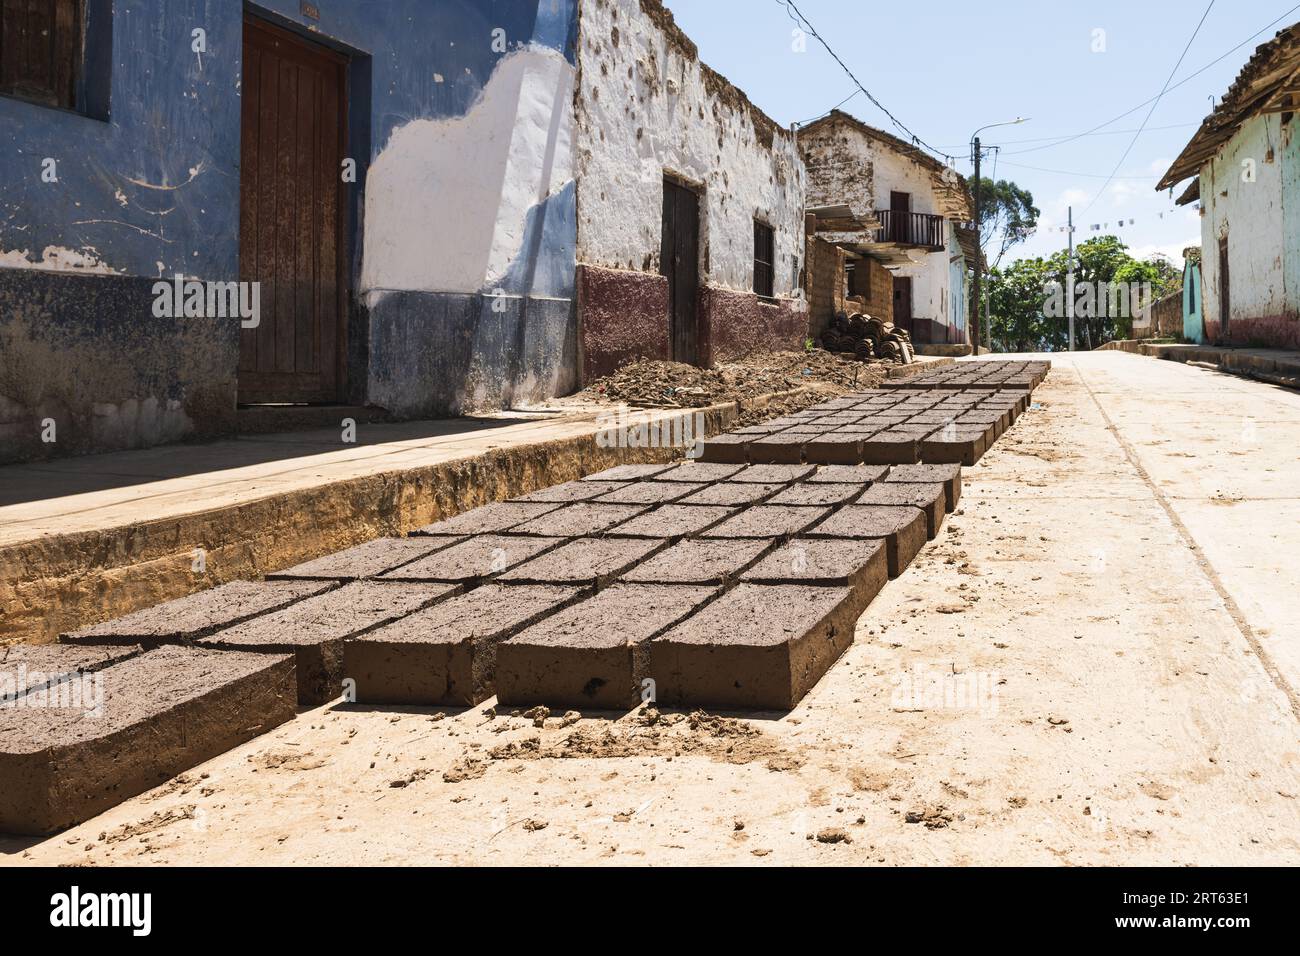 Handwerkliche Herstellung von Lehmziegeln in den anden Perus Stockfoto